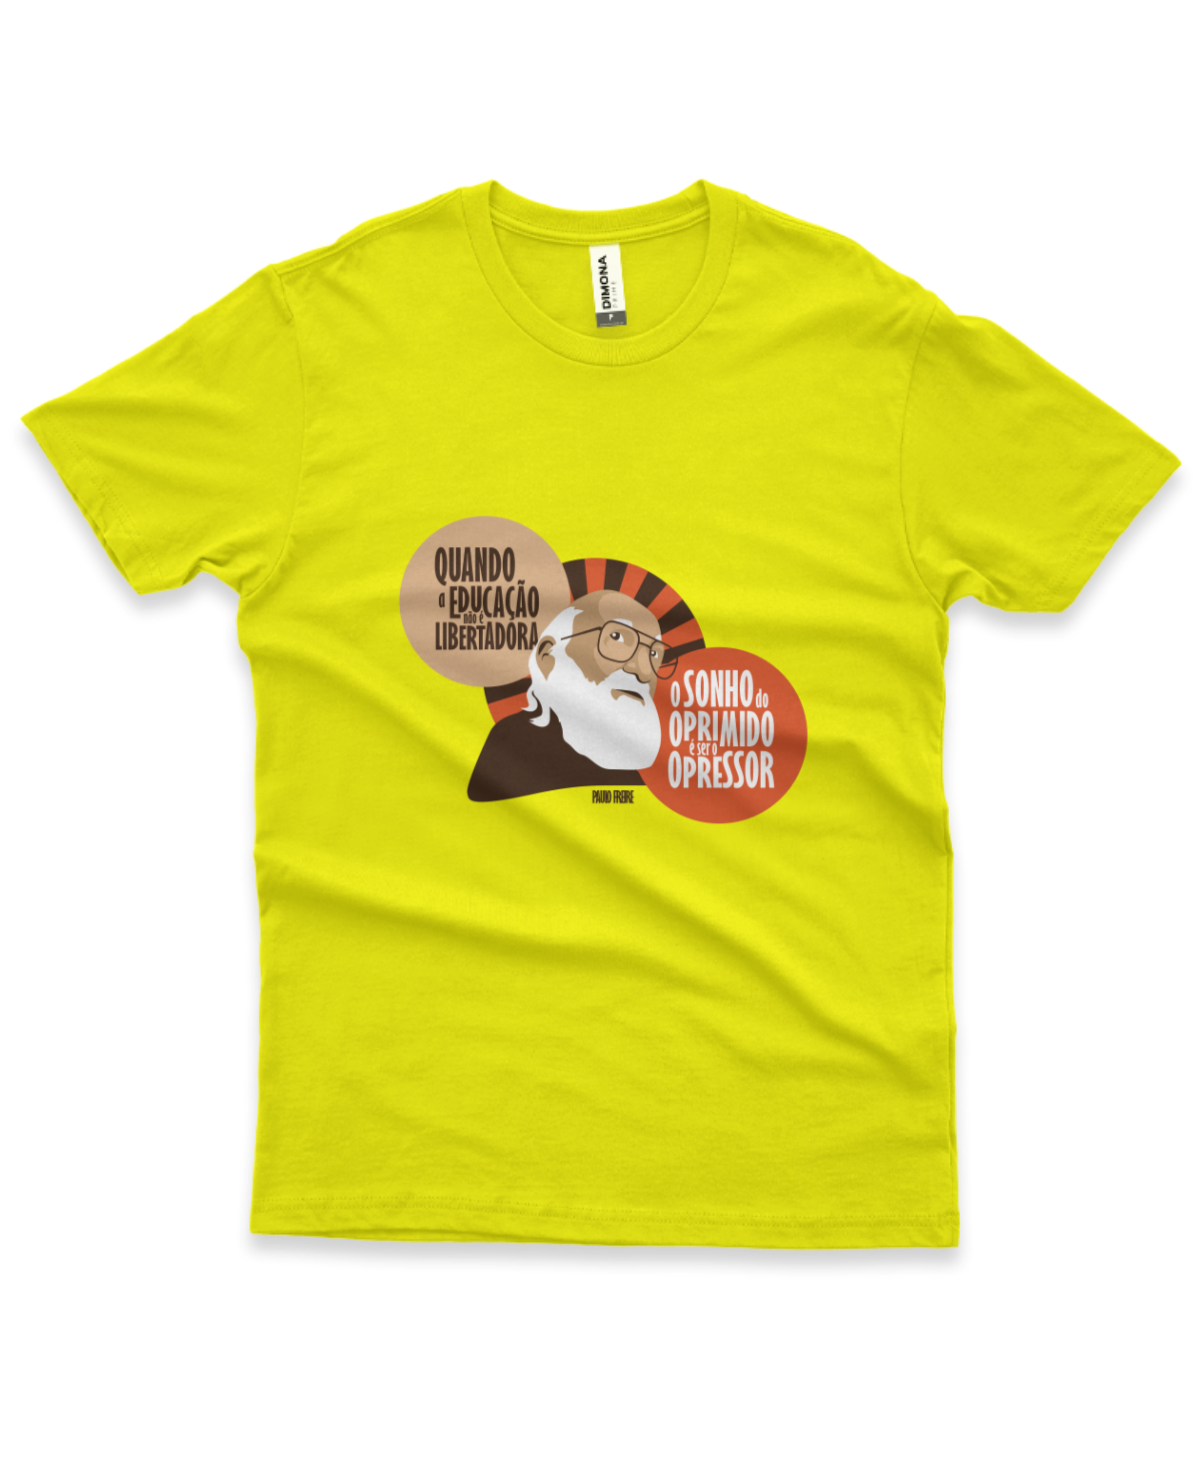 camiseta masculina cor amarelo canário com a ilustração do Paulo Freire e a frase "quando a educação não é libertadora, o sonho do oprimido é ser opressor"